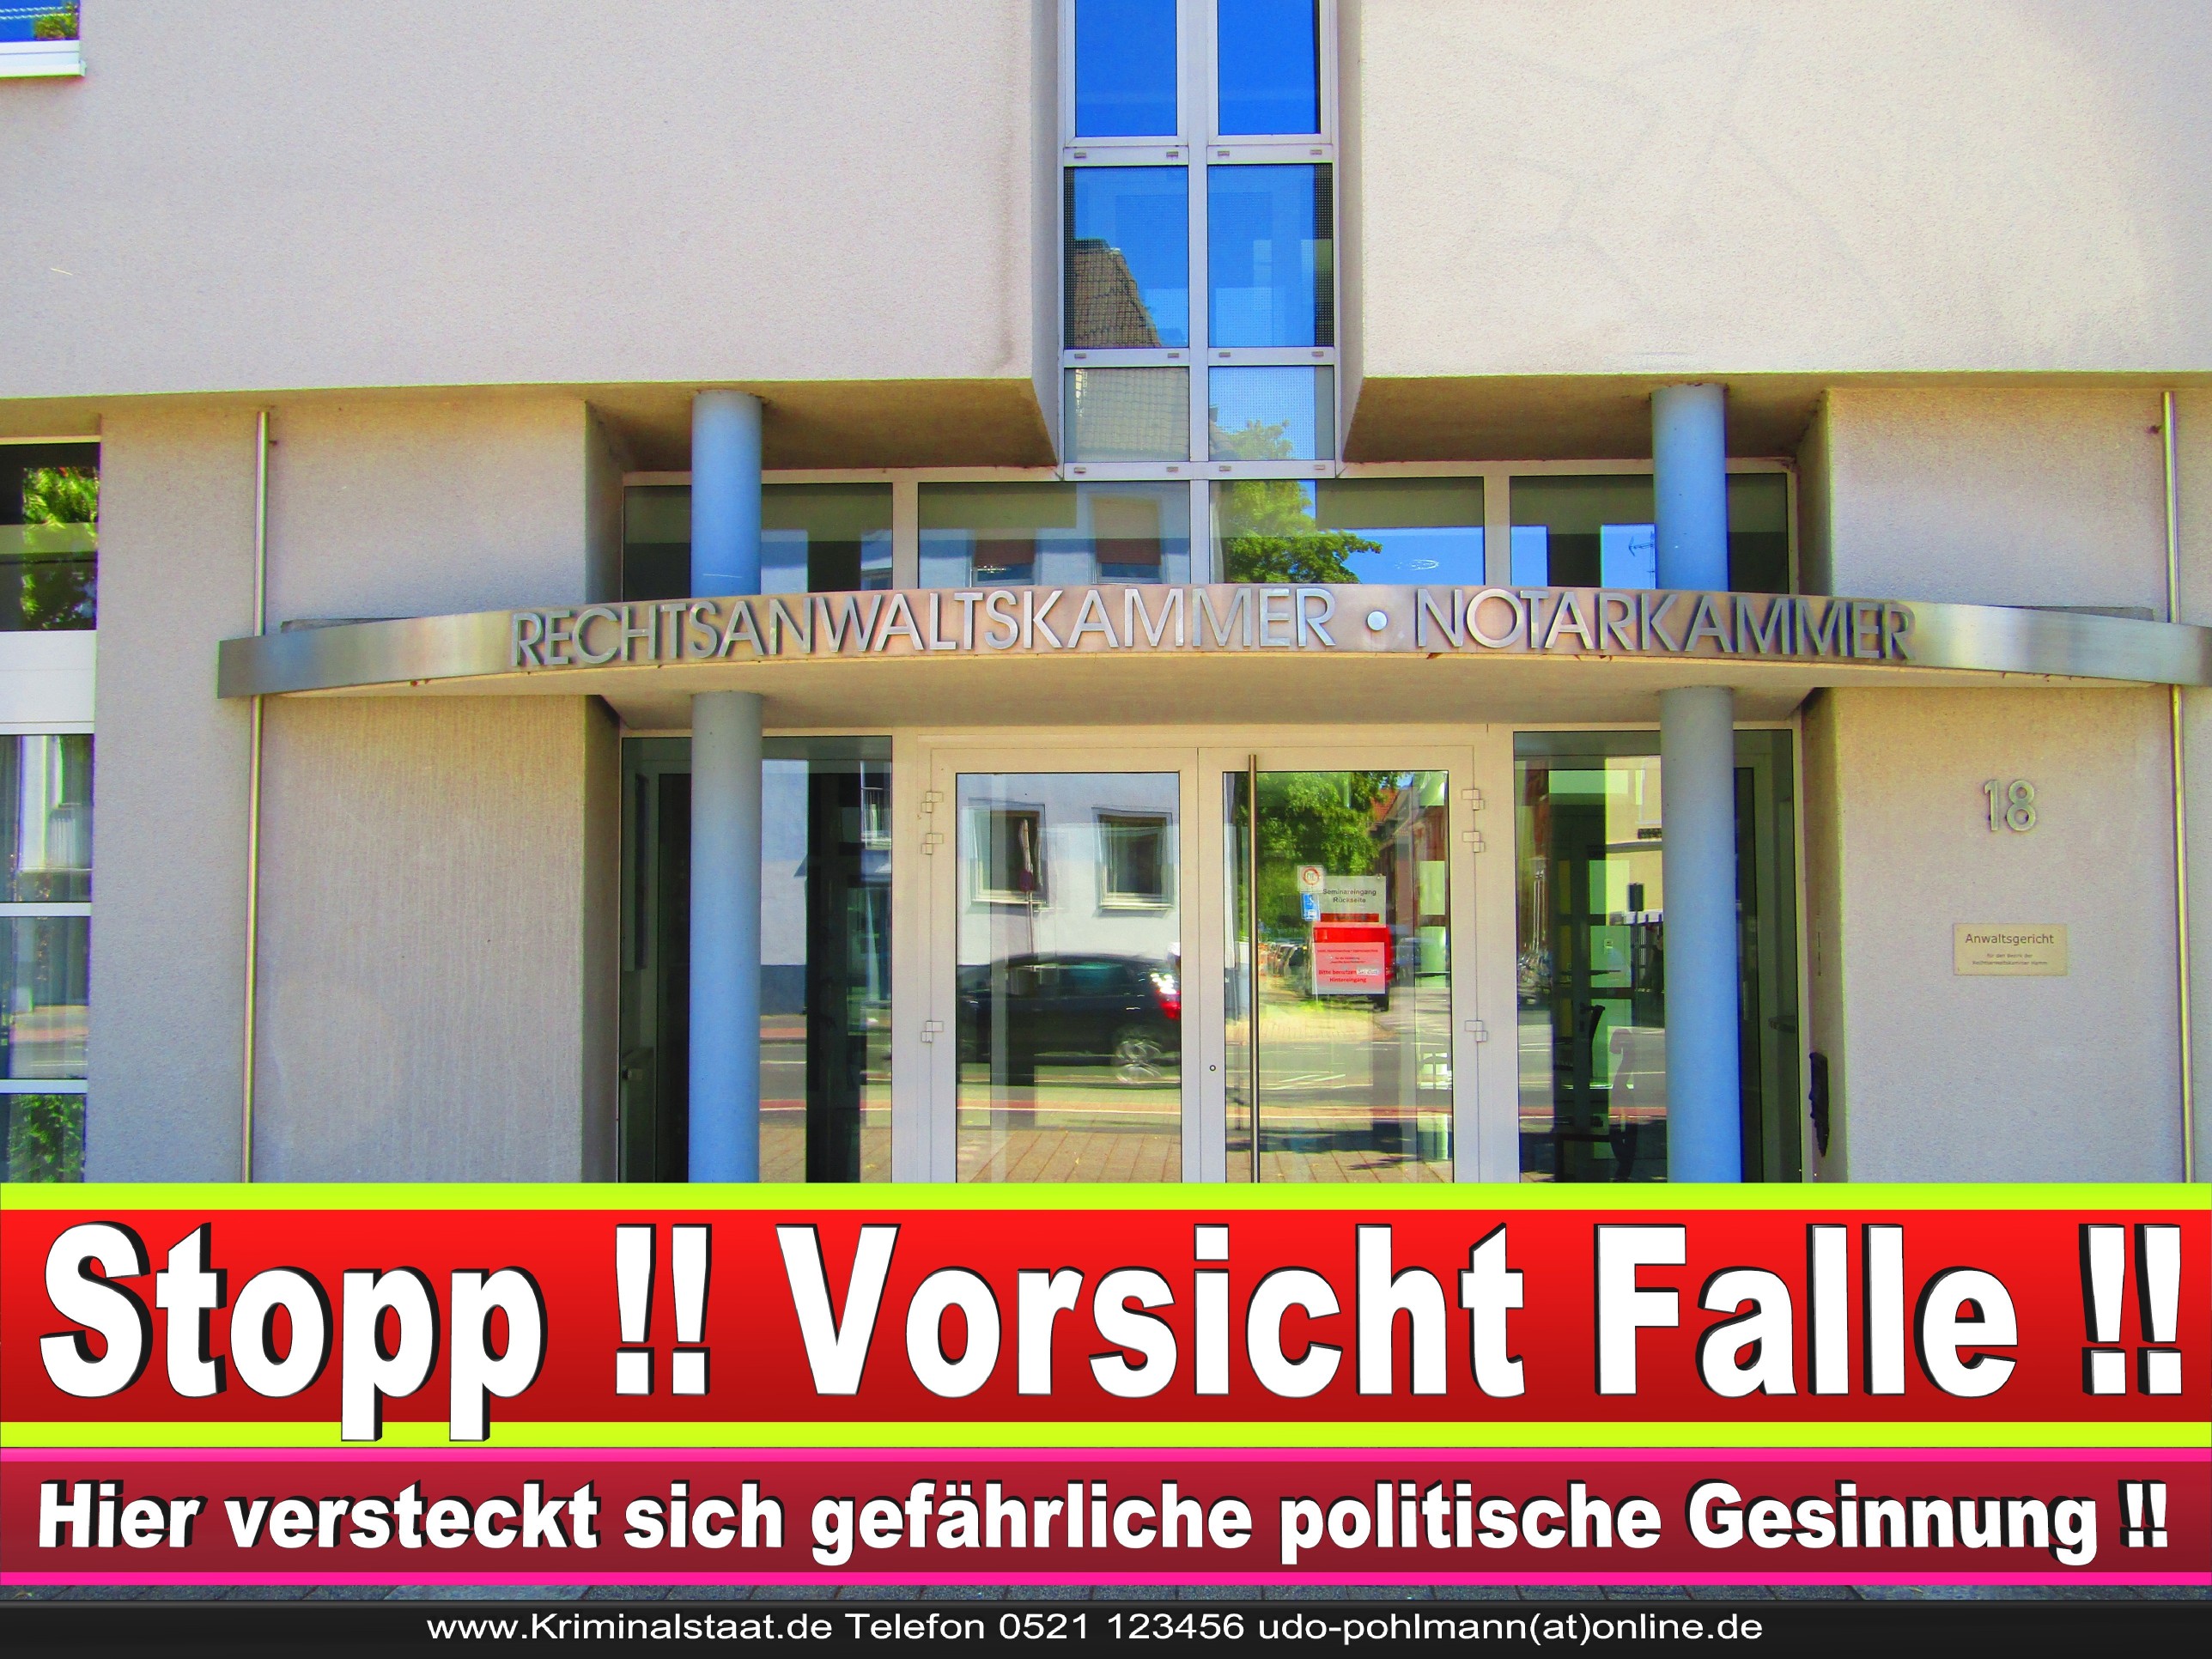 Rechtsanwaltskammer Hamm NRW Justizminister Rechtsanwalt Notar Vermögensverfall Urteil Rechtsprechung CDU SPD FDP Berufsordnung Rechtsanwälte Rechtsprechung (2) 1